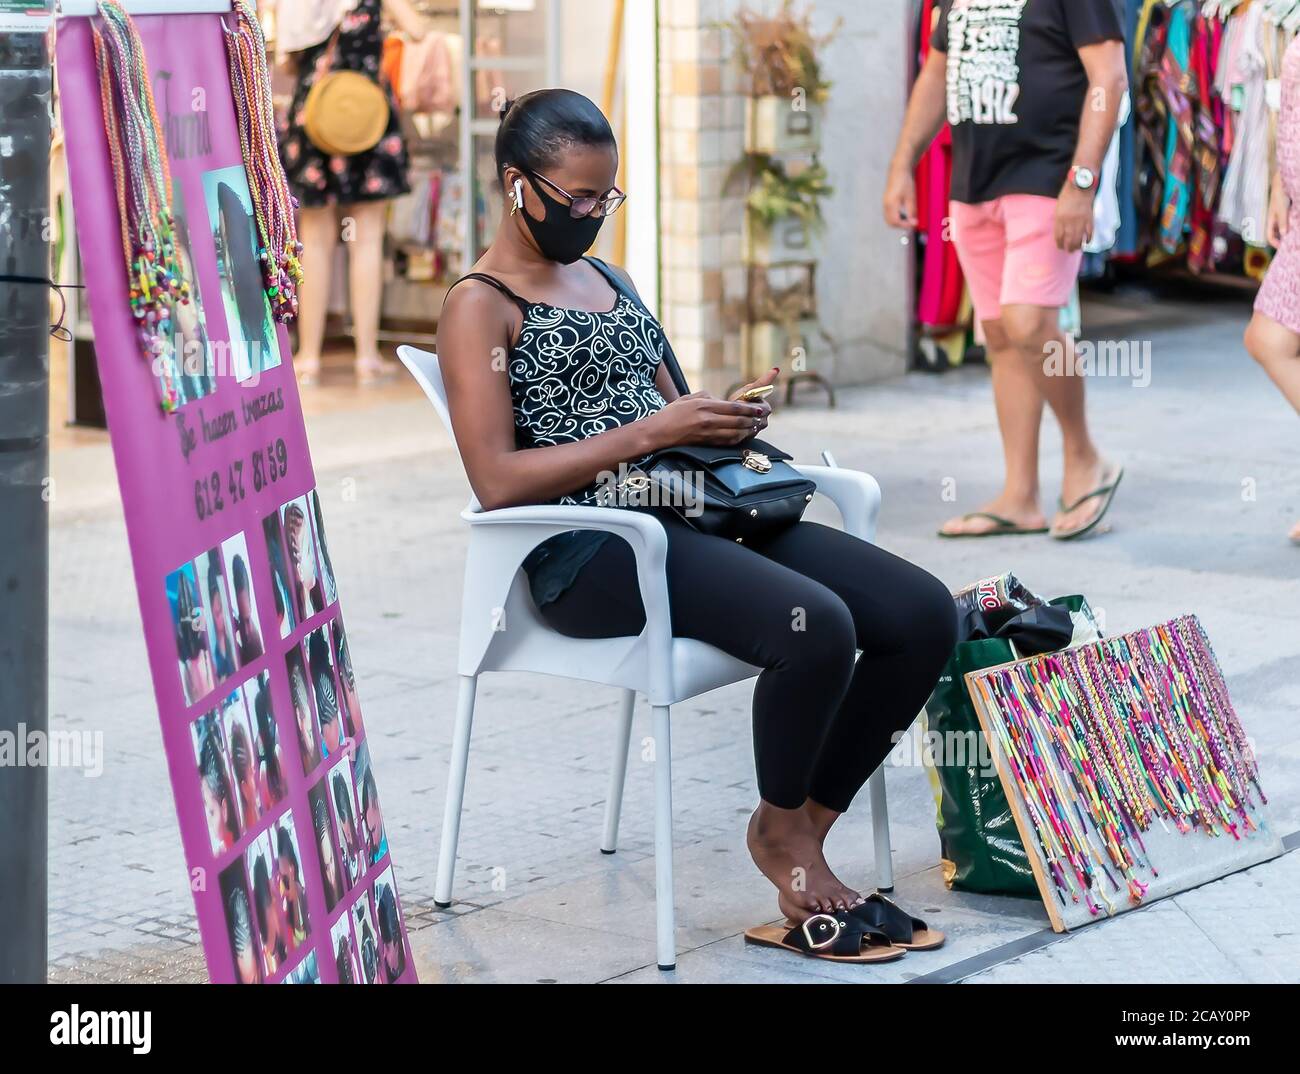 Punta Umbria, Huelva, Espagne - 7 août 2020: Une femme africaine immigrée côté rue salon de coiffure. Ici, le coiffeur attend de créer des tresses en h. Banque D'Images